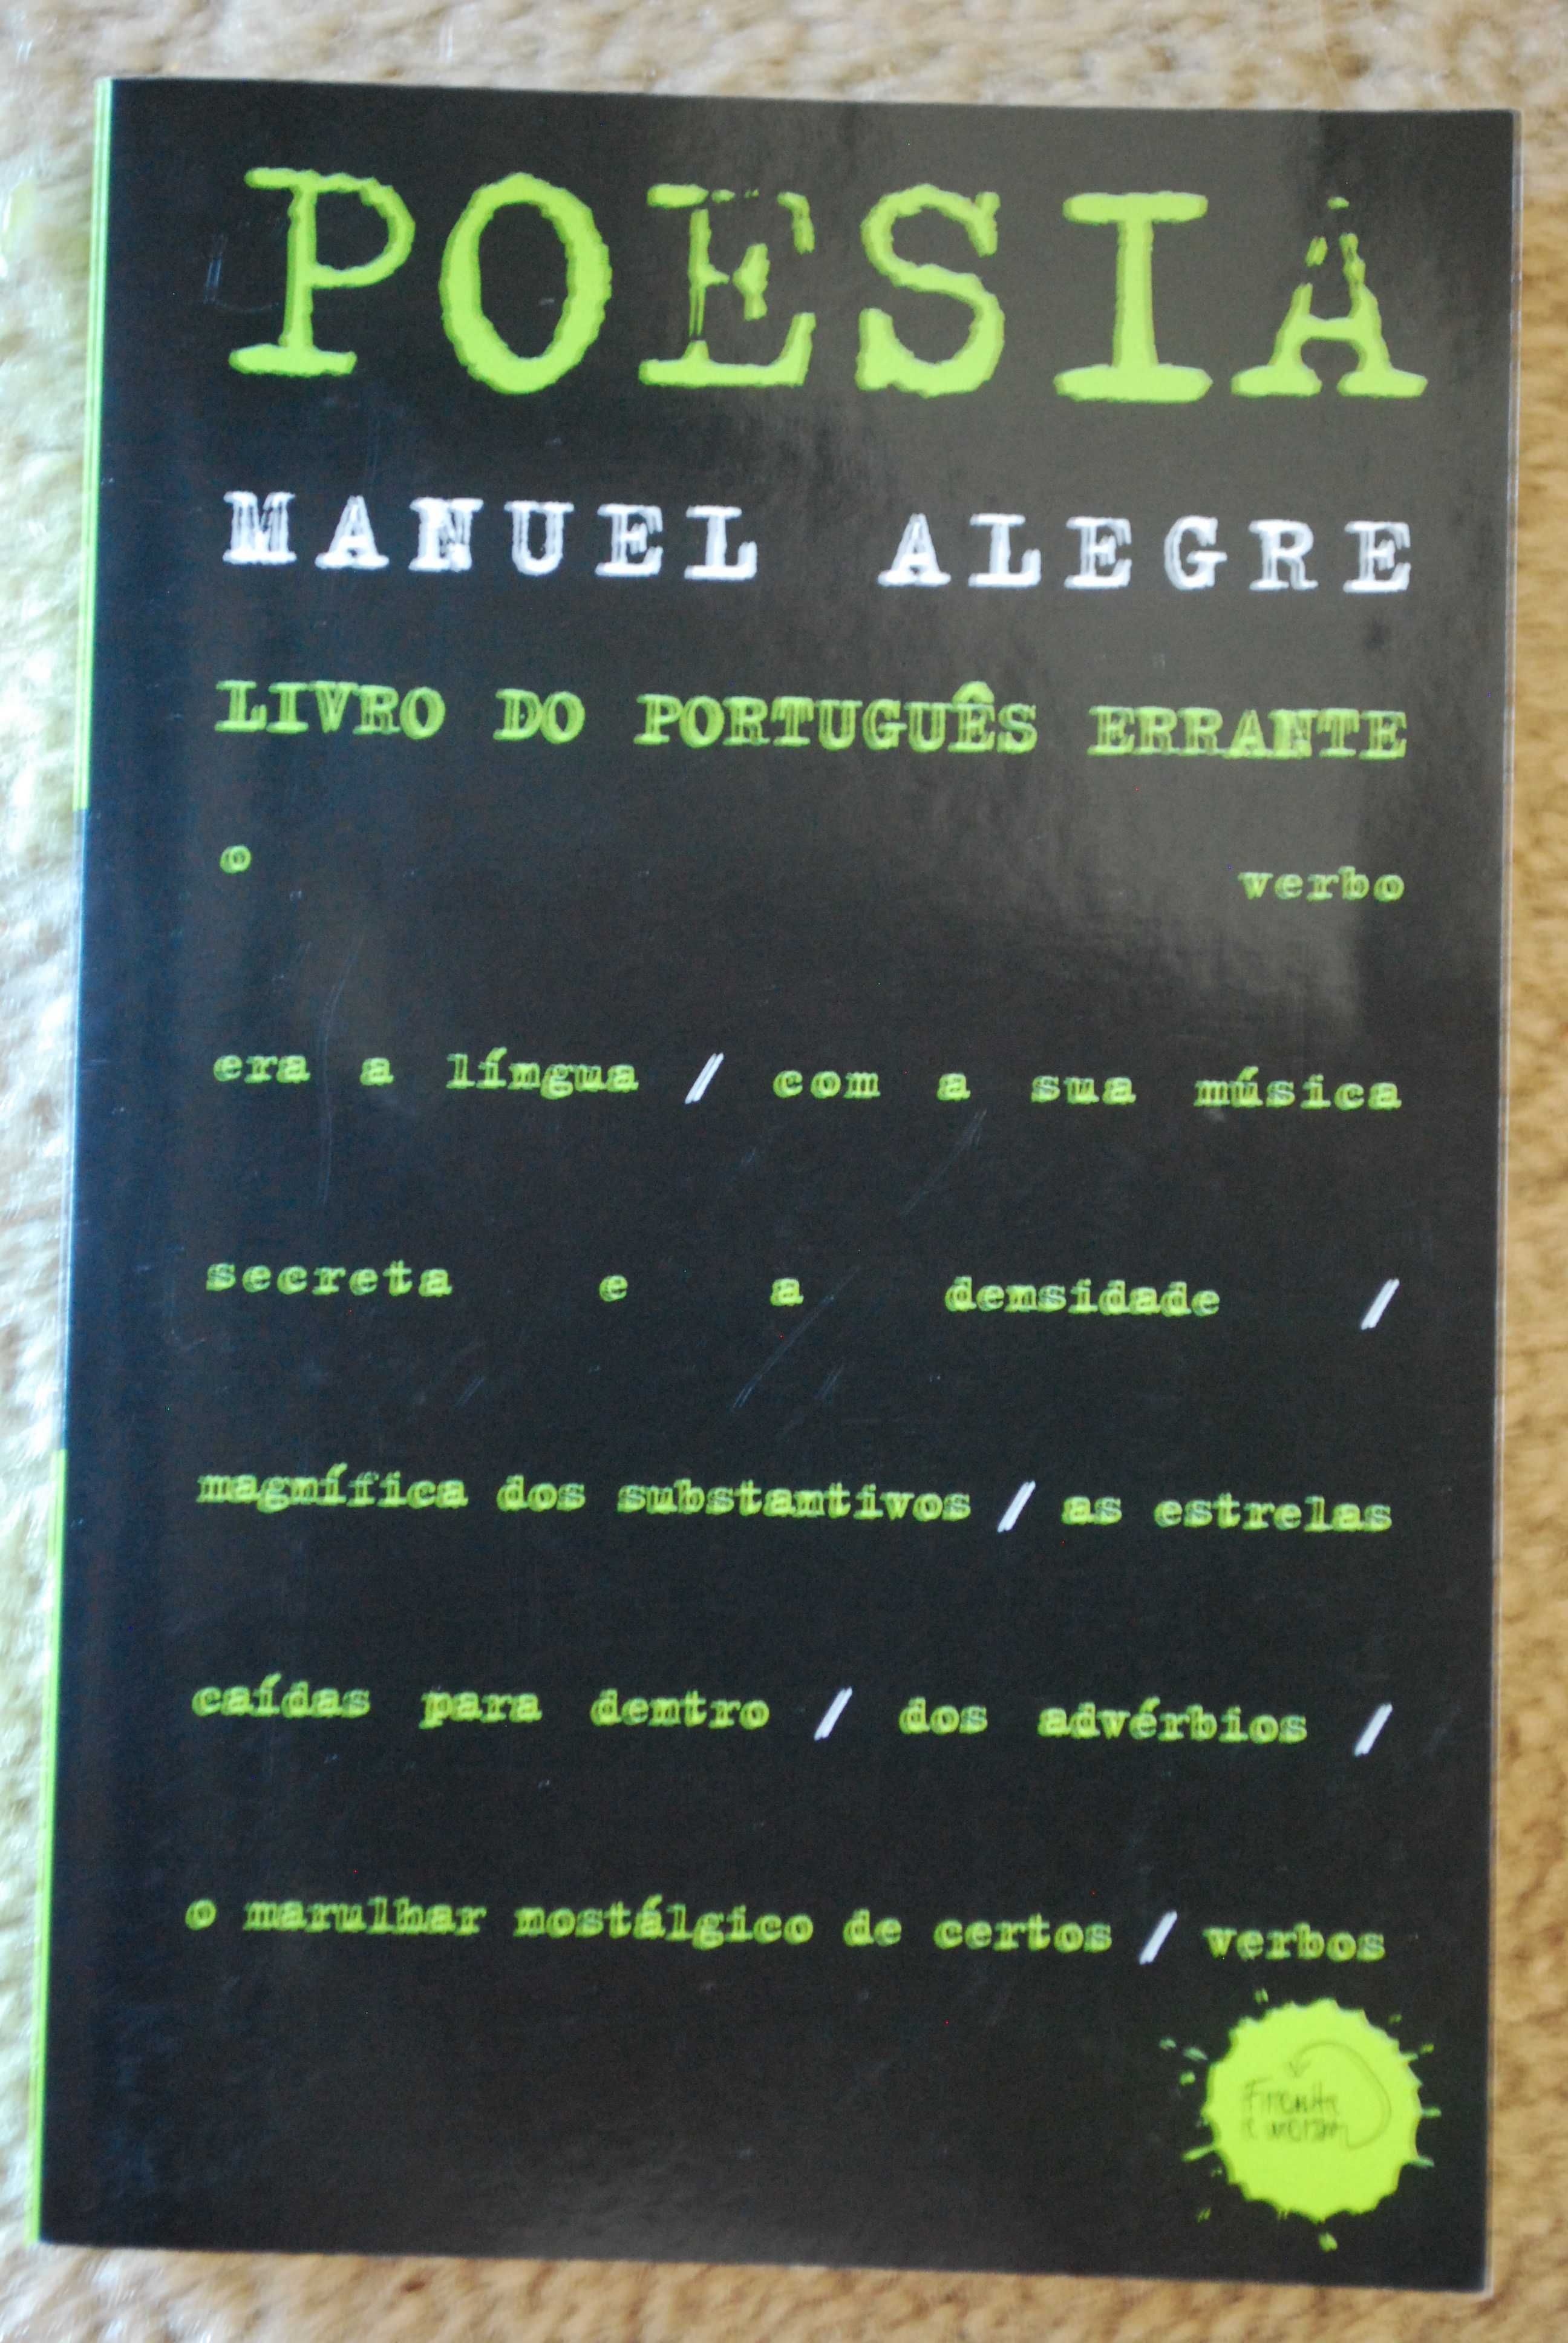 Livro de Português Errante de Manuel Alegre